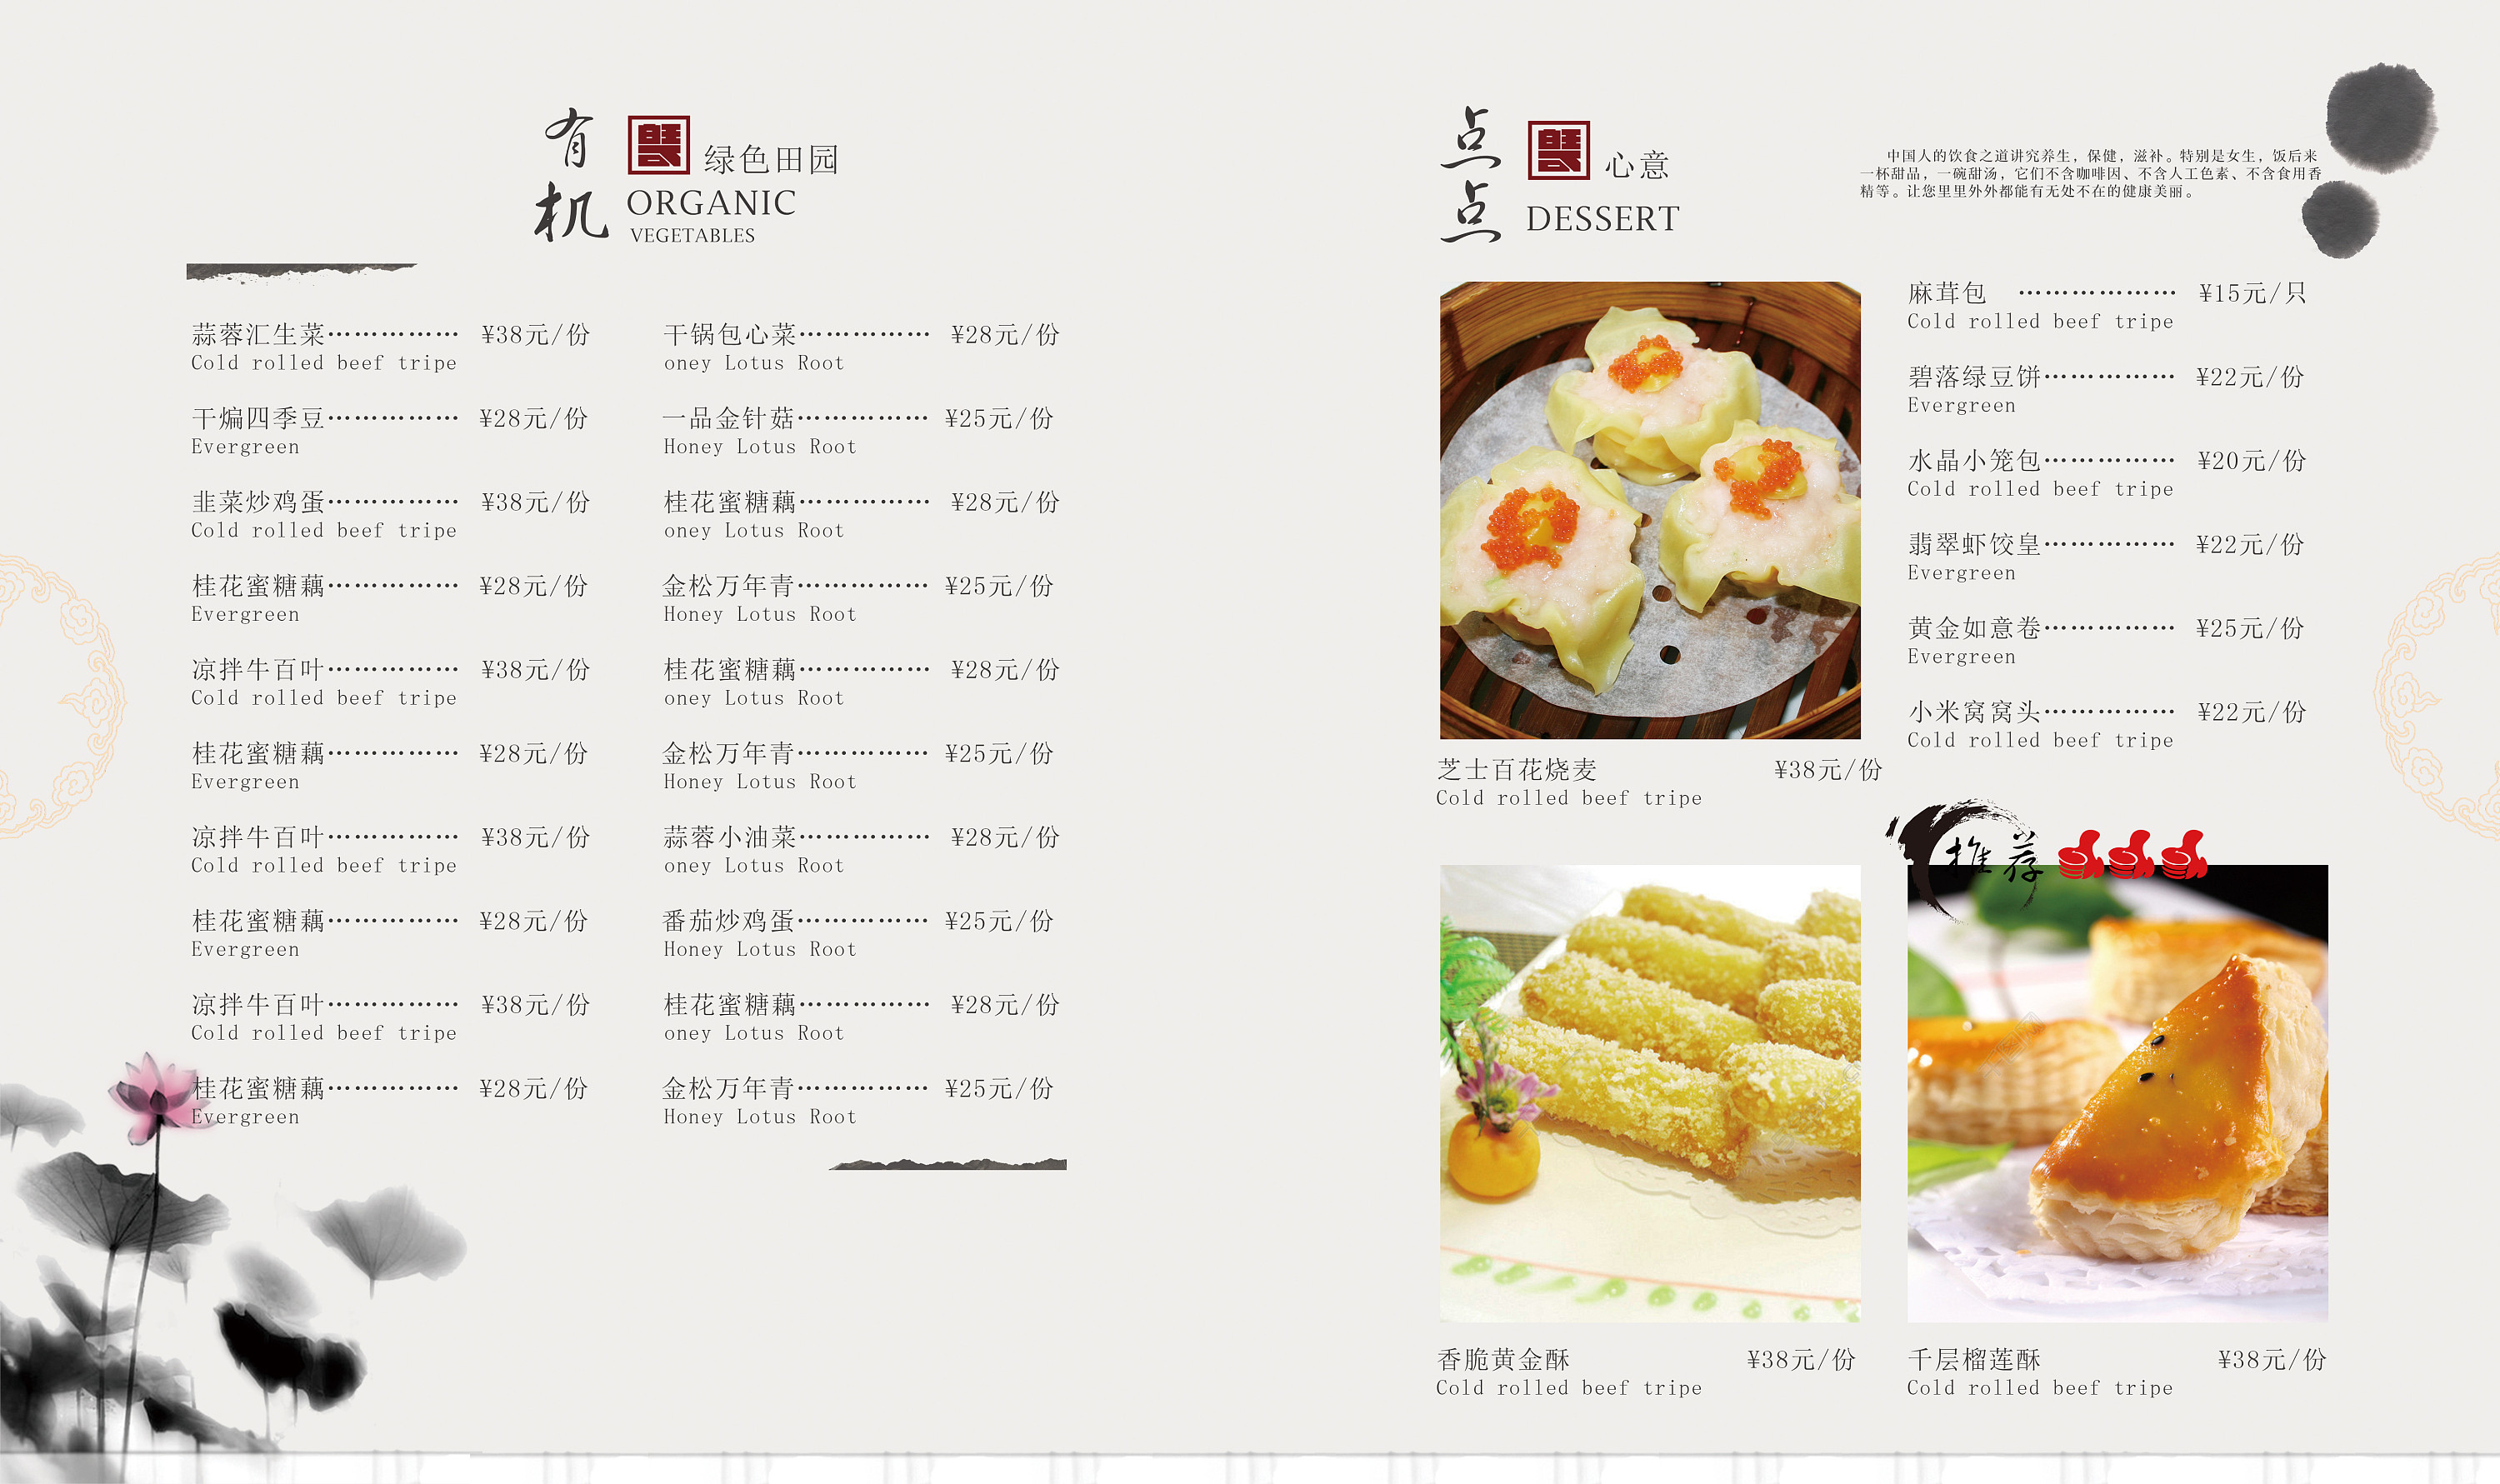 中式餐厅菜单设计图片素材免费下载 - 觅知网